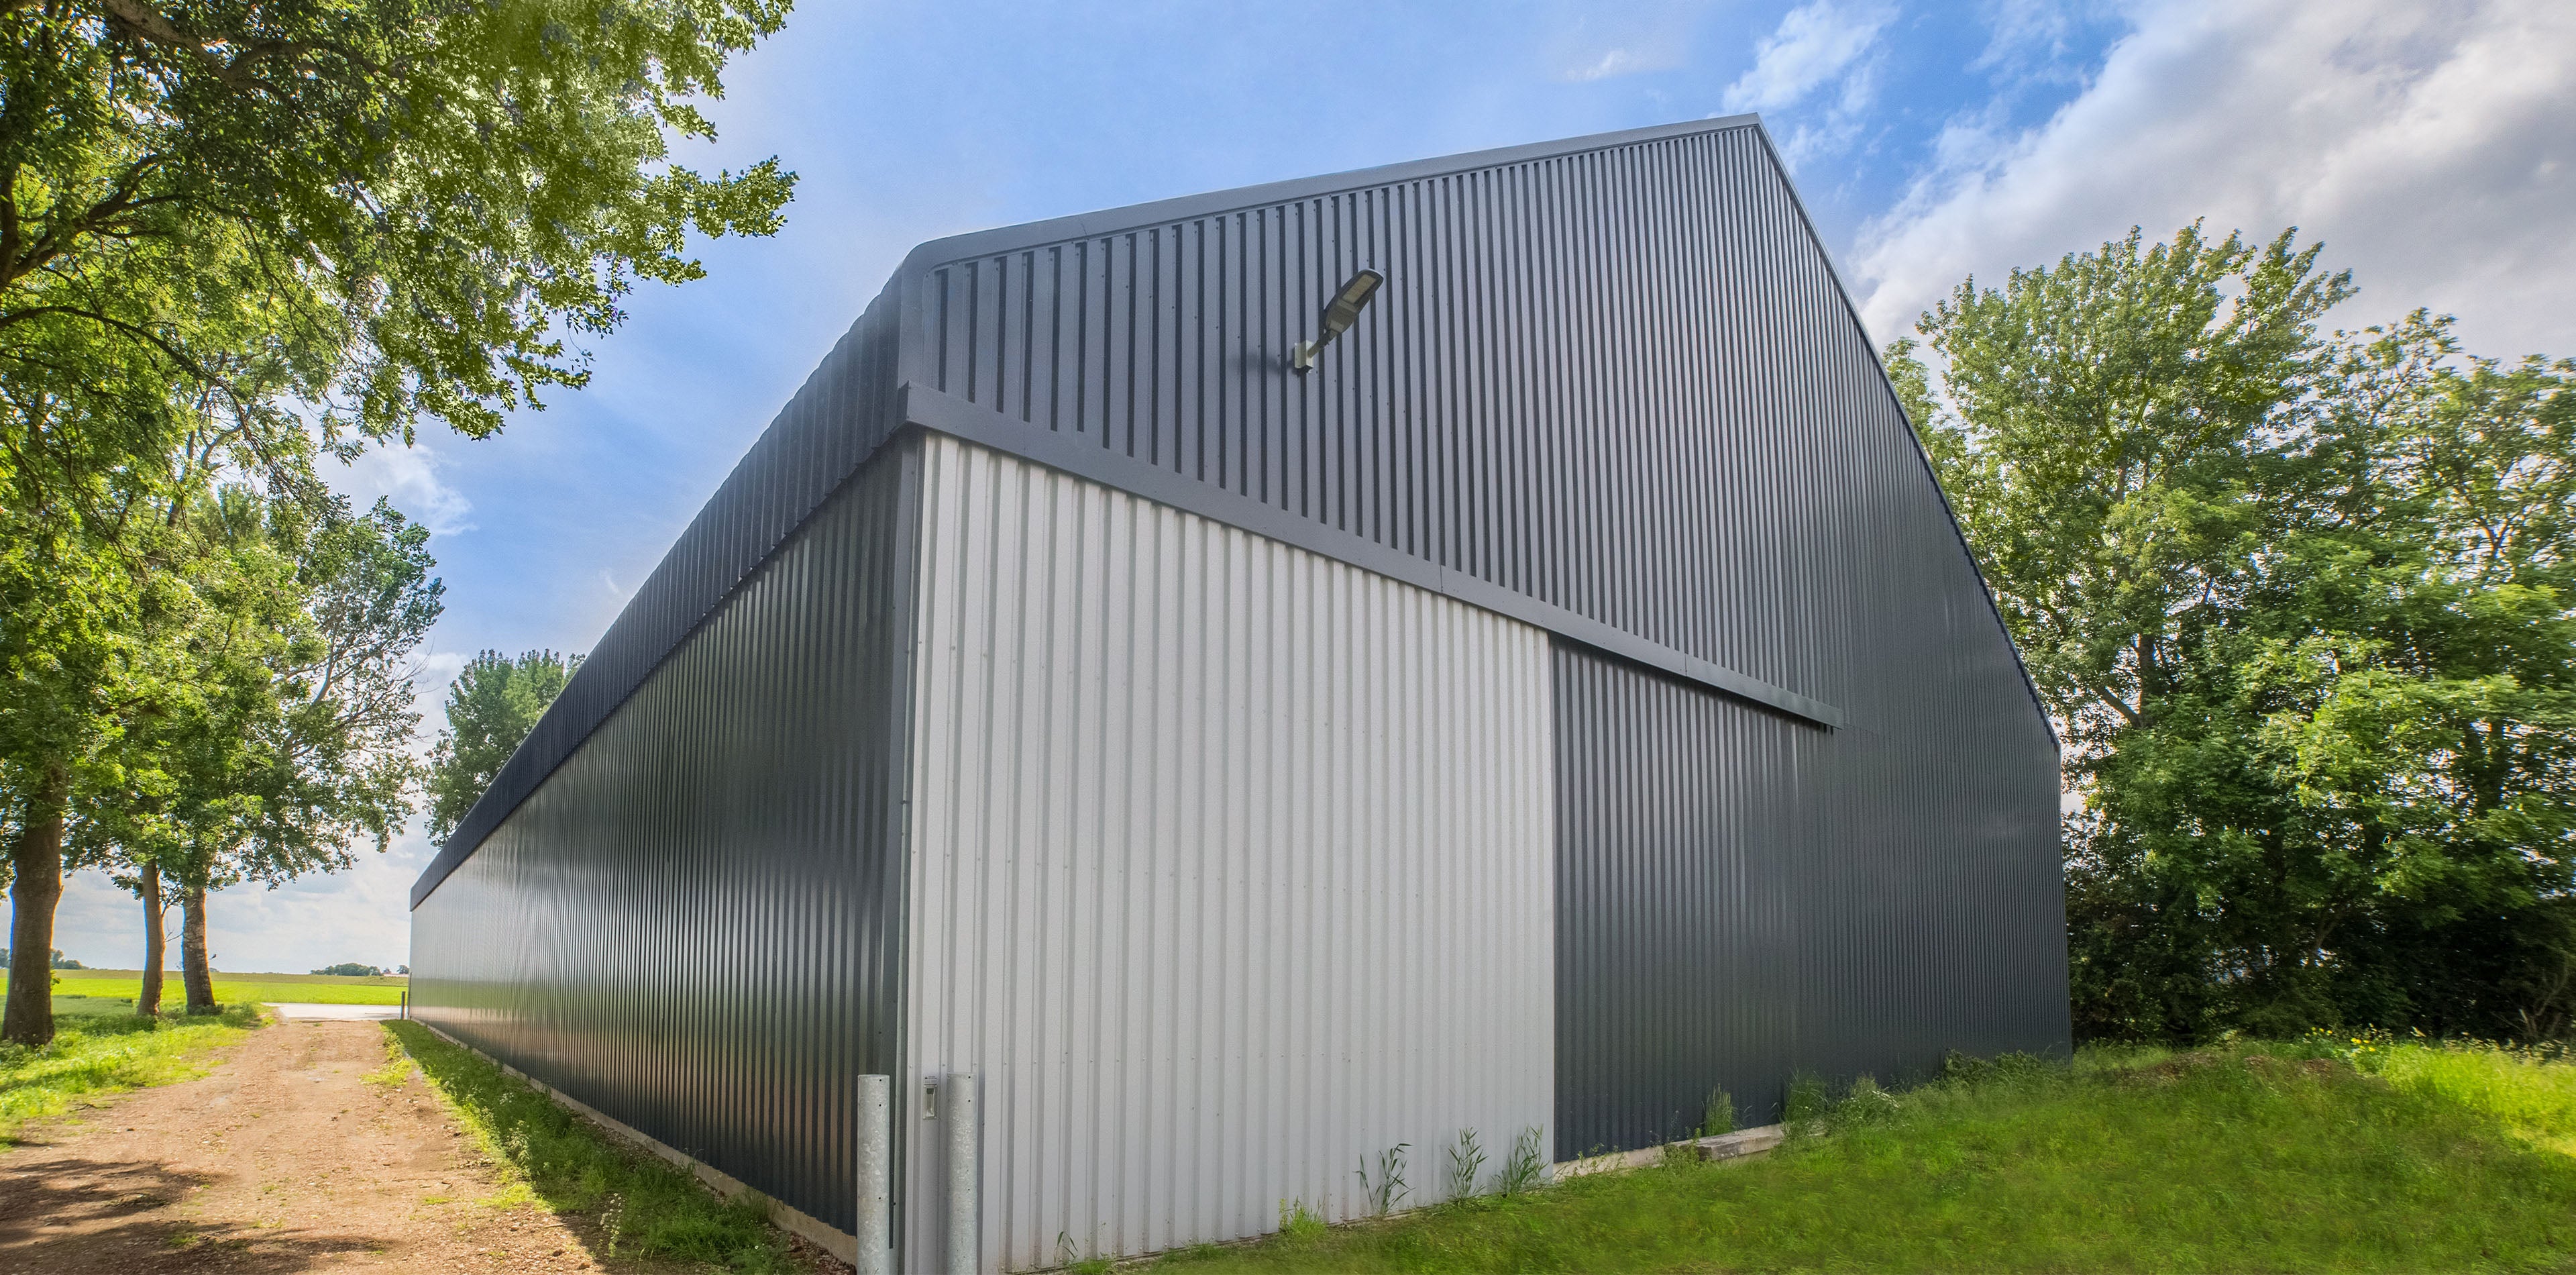 HANGAR AGRICOLE - structure durable en profilés d'aluminium